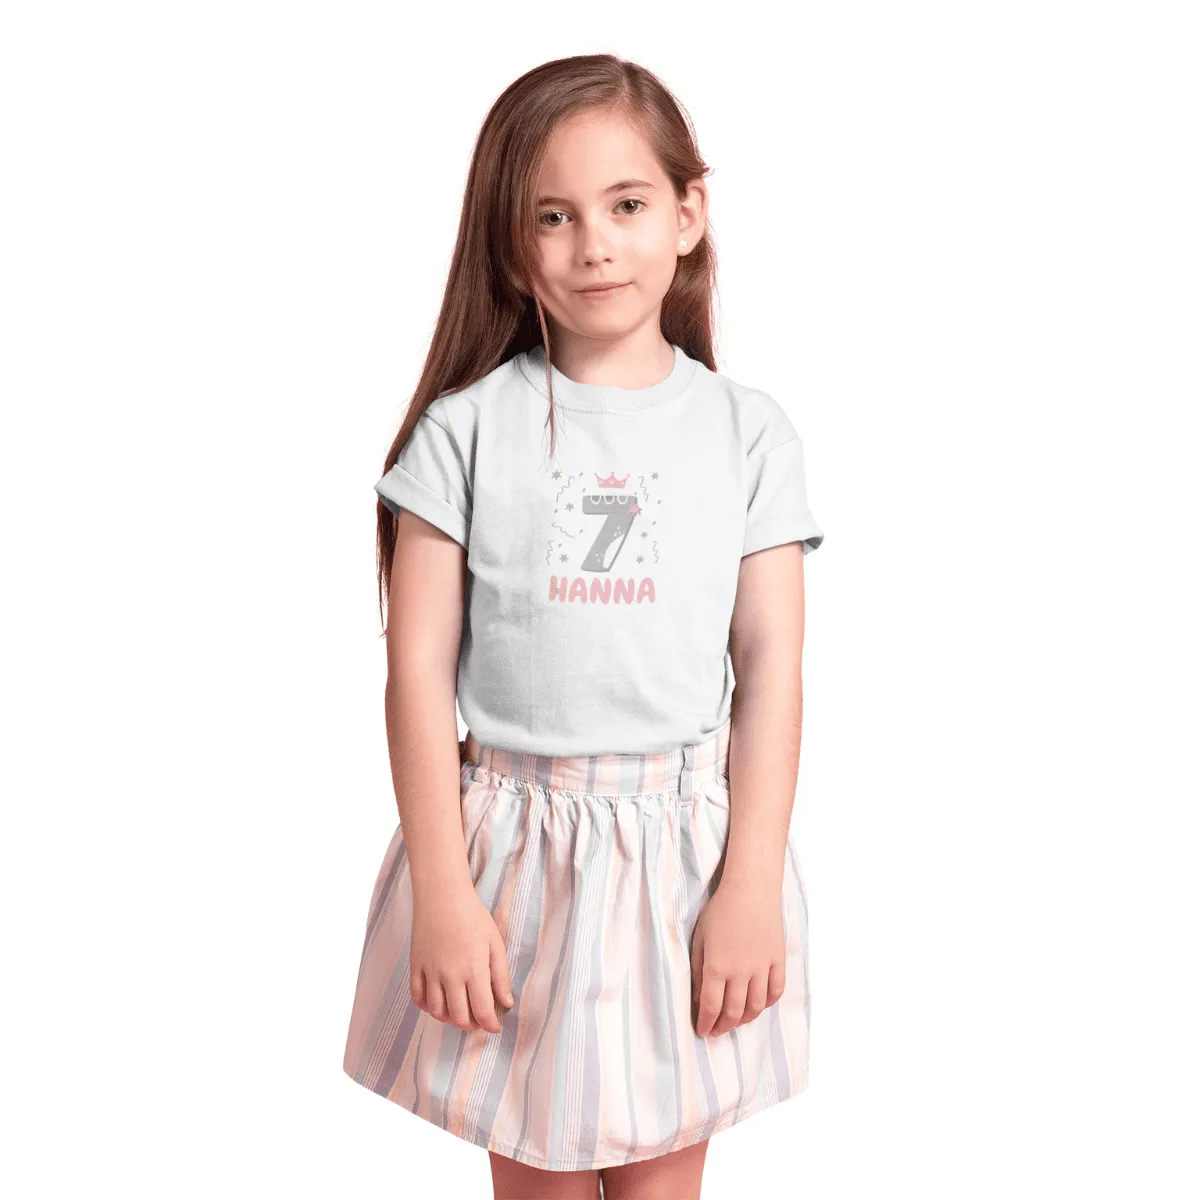 Kinder T-Shirt 7 Jahre mit Wunschname - Mädchen - Design Krone